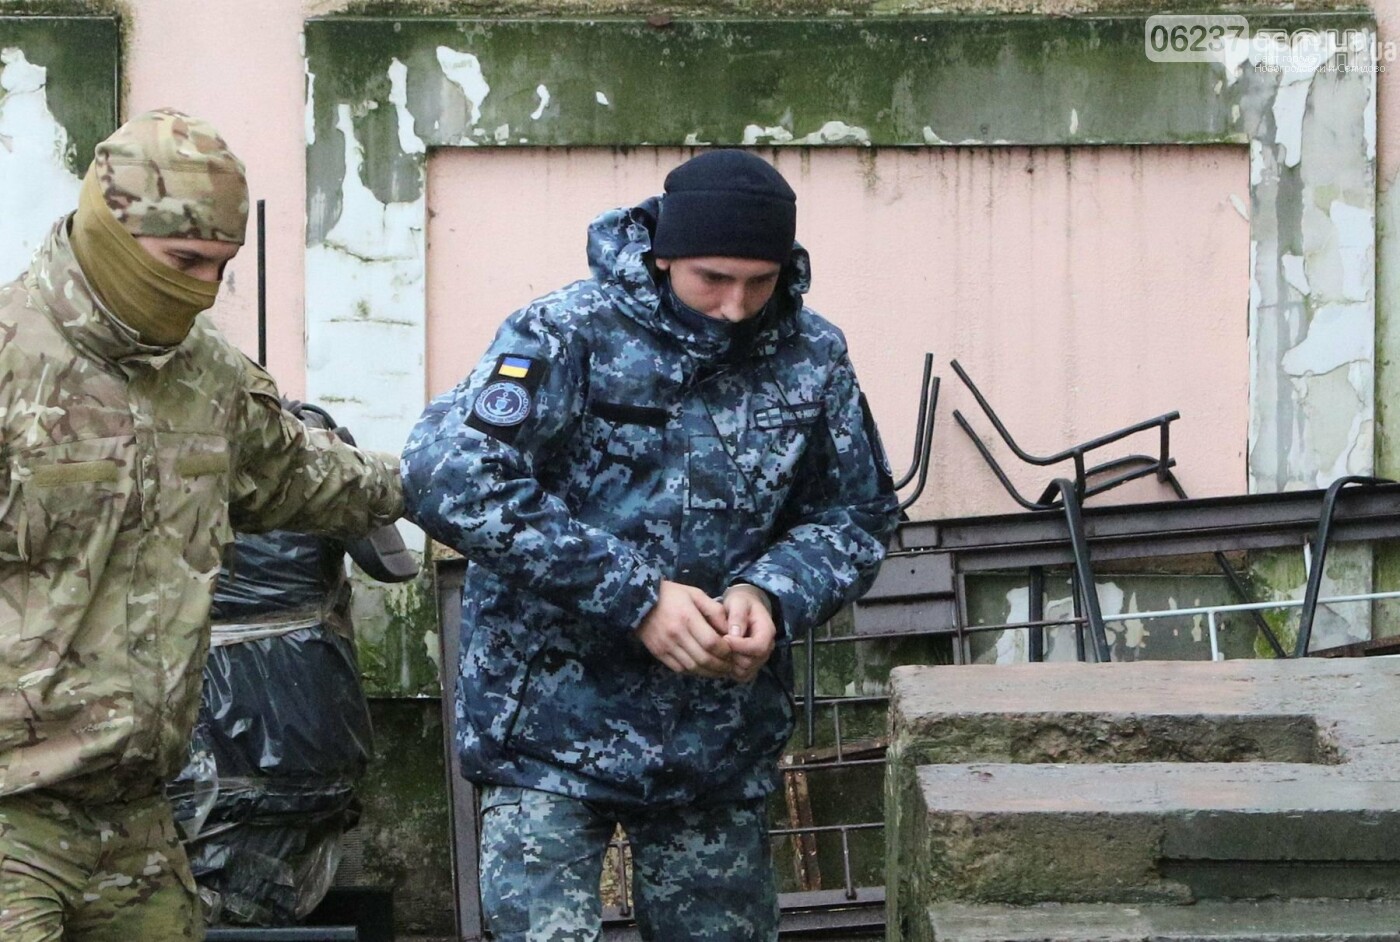 Глава ВМС Украины предложил обменять себя на пленных Россией моряков, фото-3